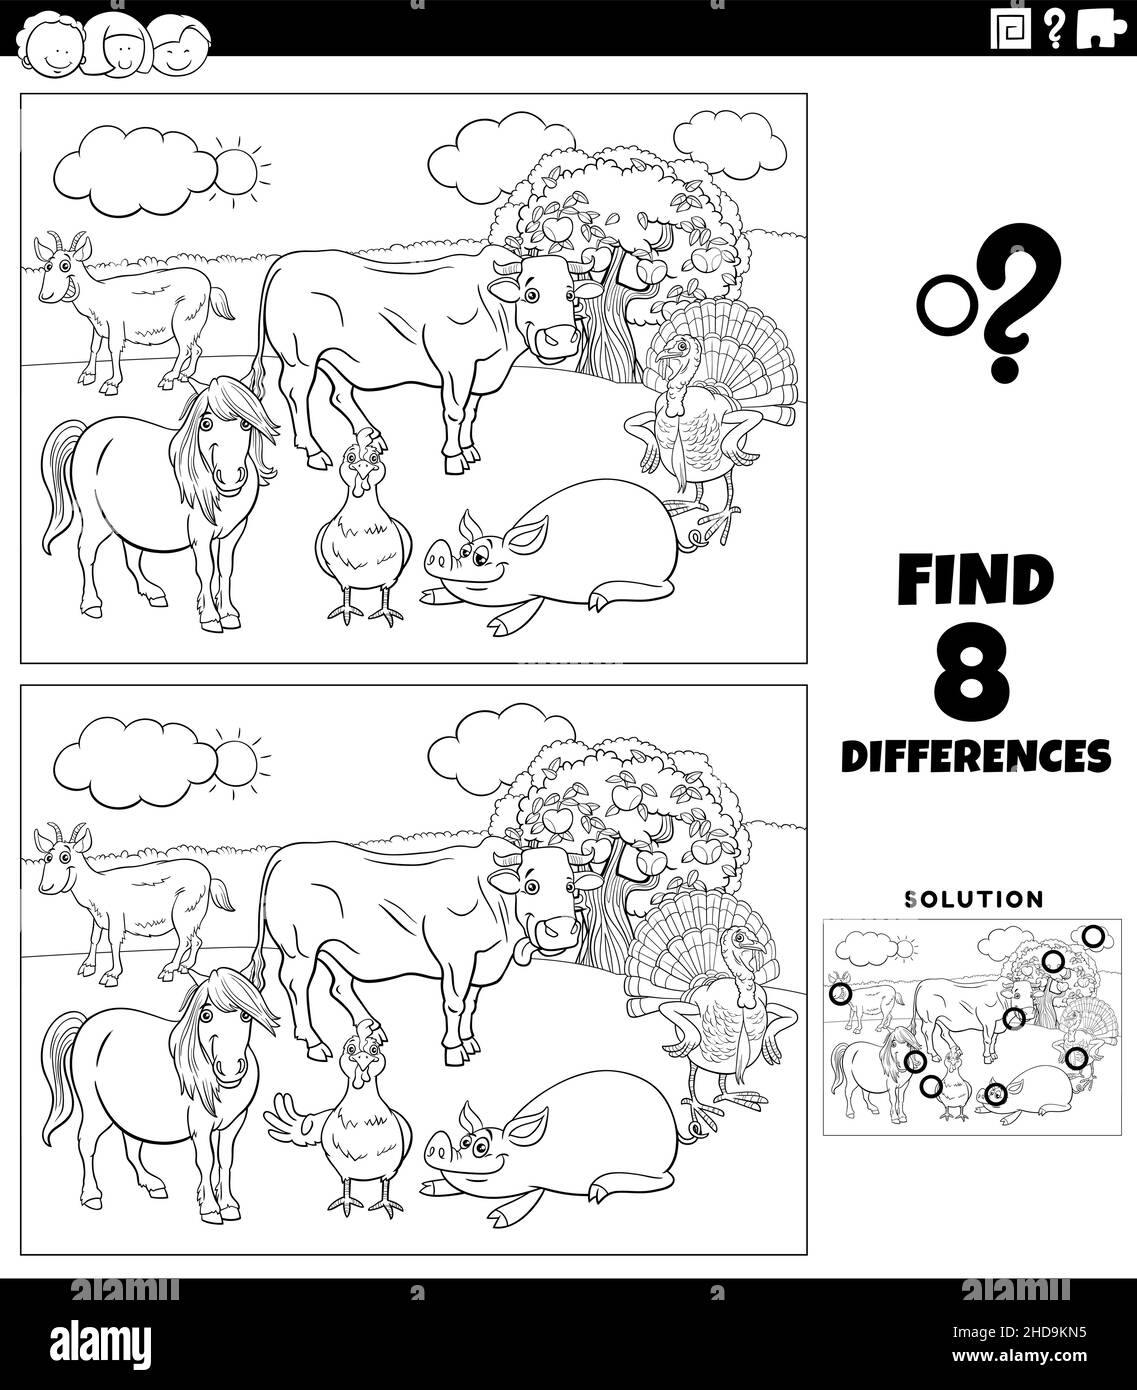 Dessin animé noir et blanc illustration de trouver les différences entre les images tâche éducative pour les enfants avec des caractères d'animal de ferme groupe de couleur Illustration de Vecteur